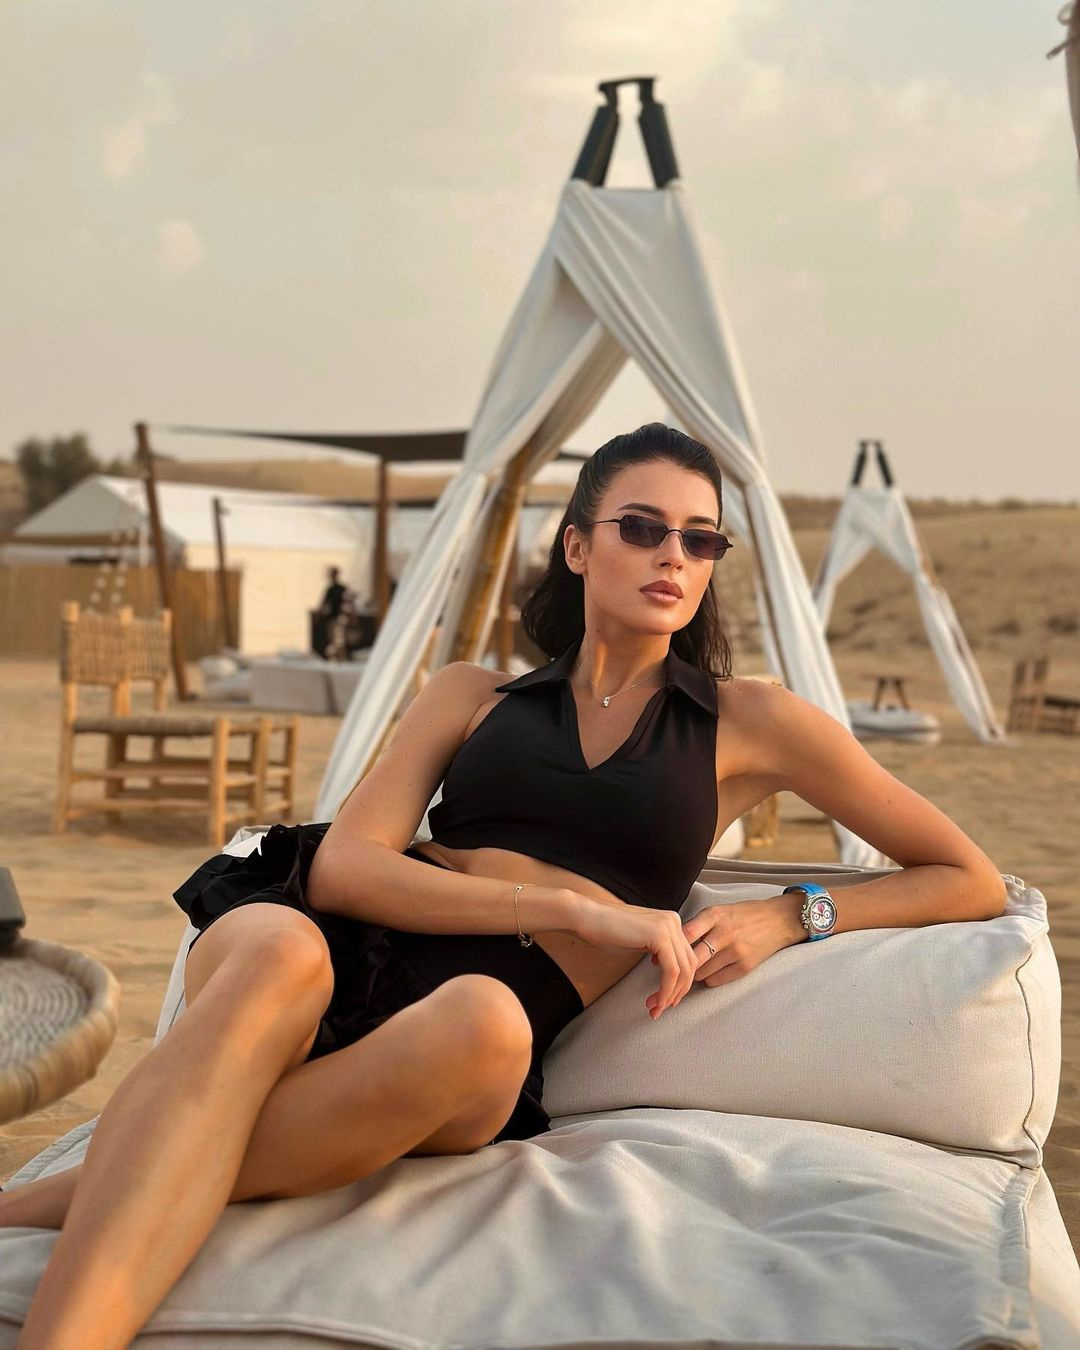 Песок и роскошь. Уральская модель закатила шикарную вечеринку в пустыне Дубая: видео